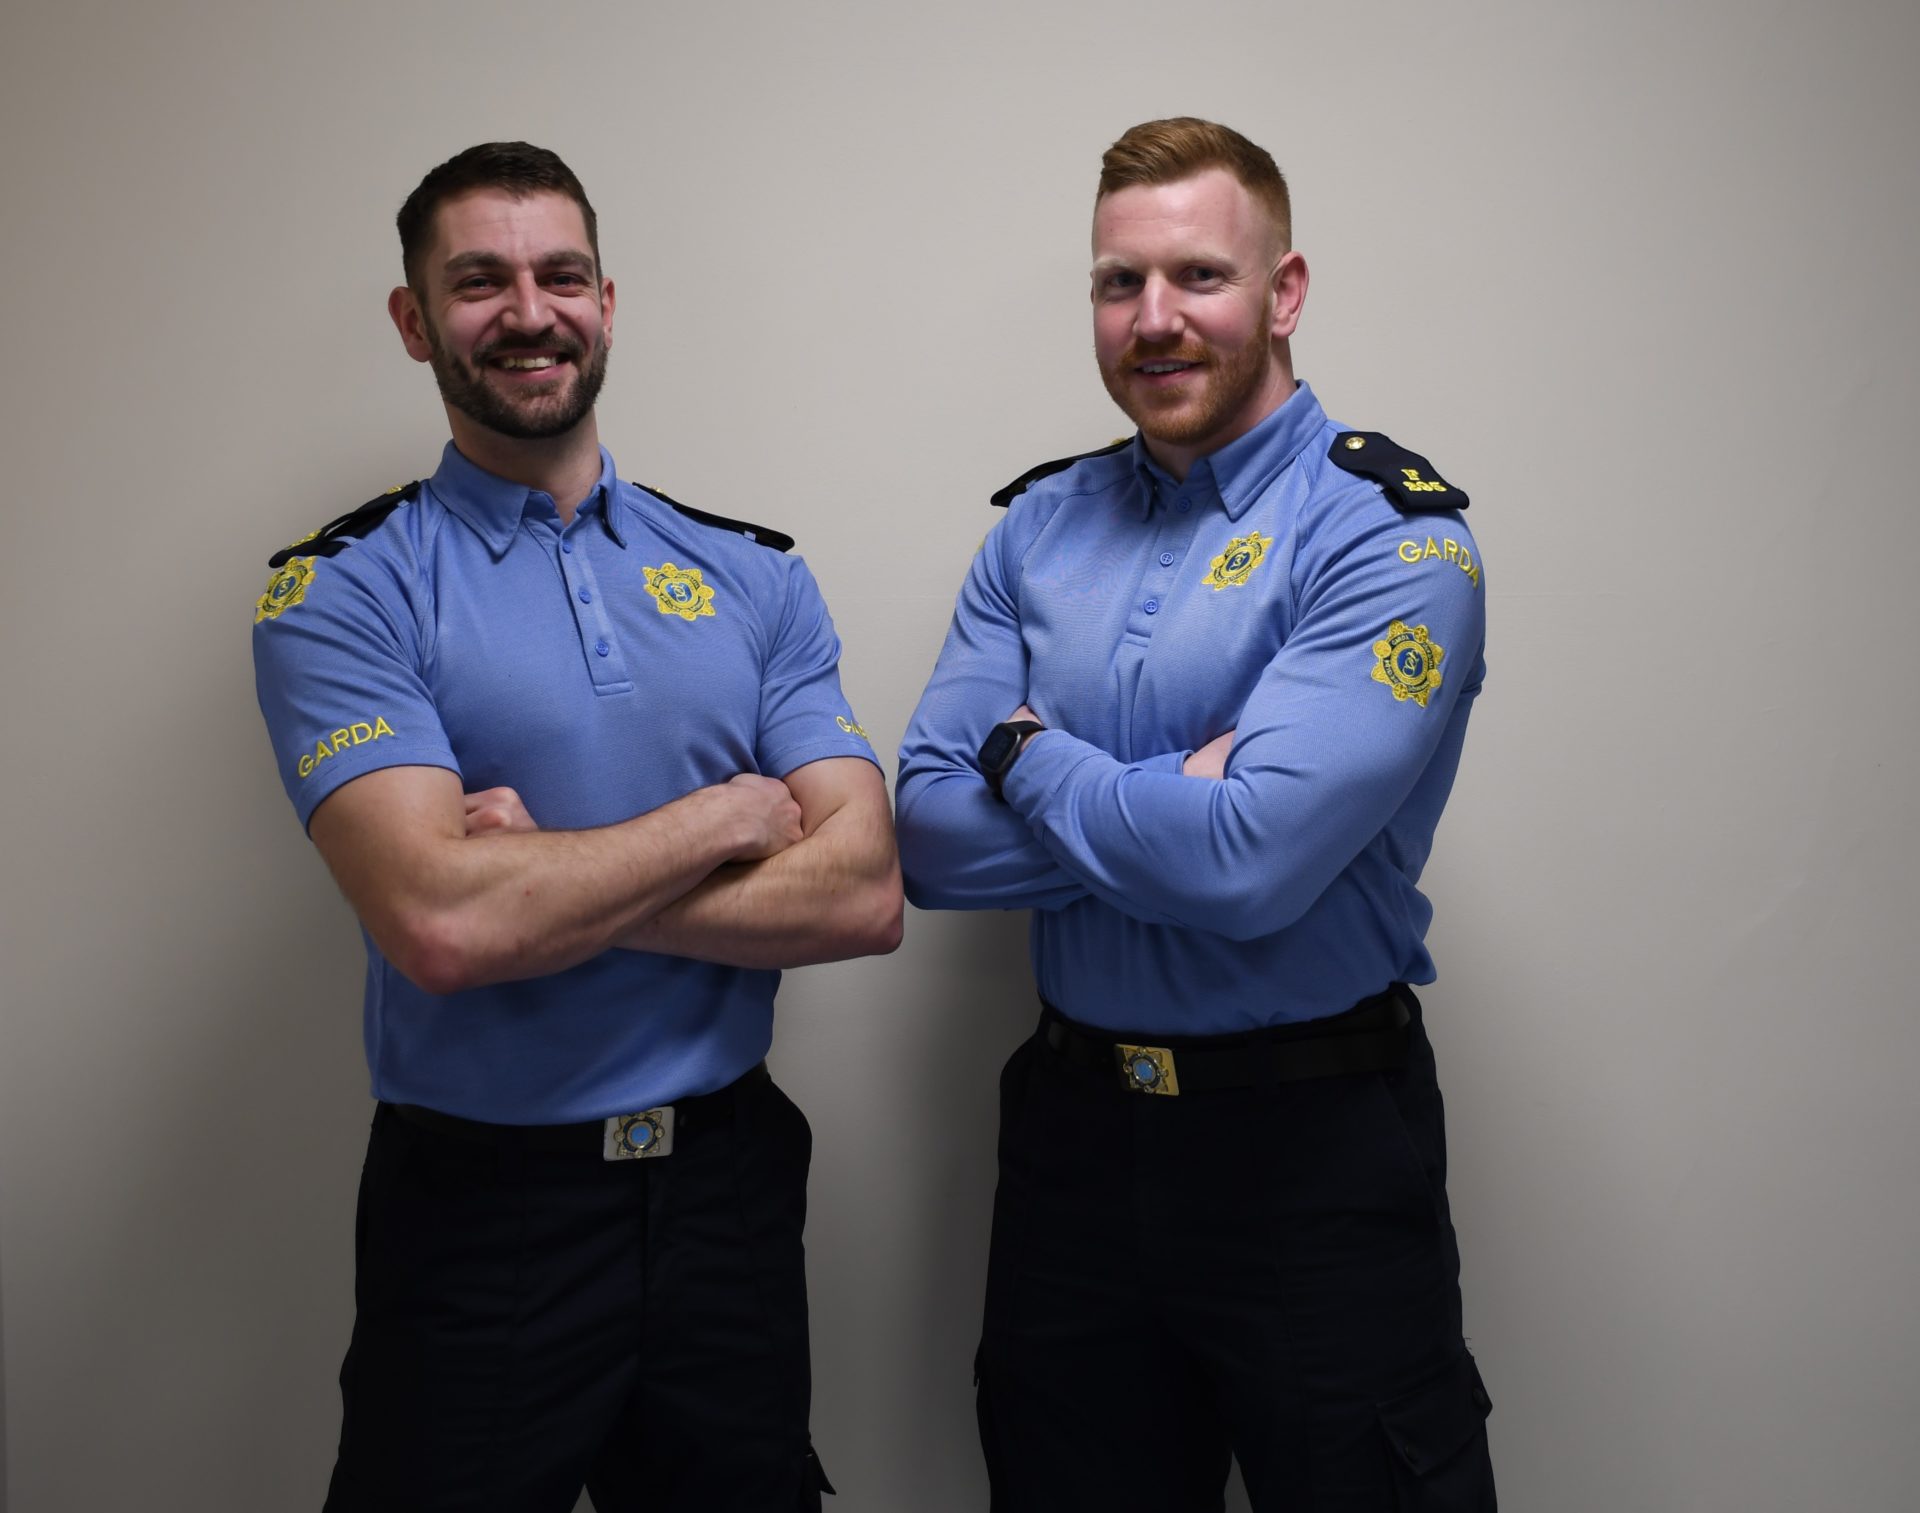 Hero Gardaí Dean Gahan (left) and Steven Carton (right). Image: An Garda Síochána.